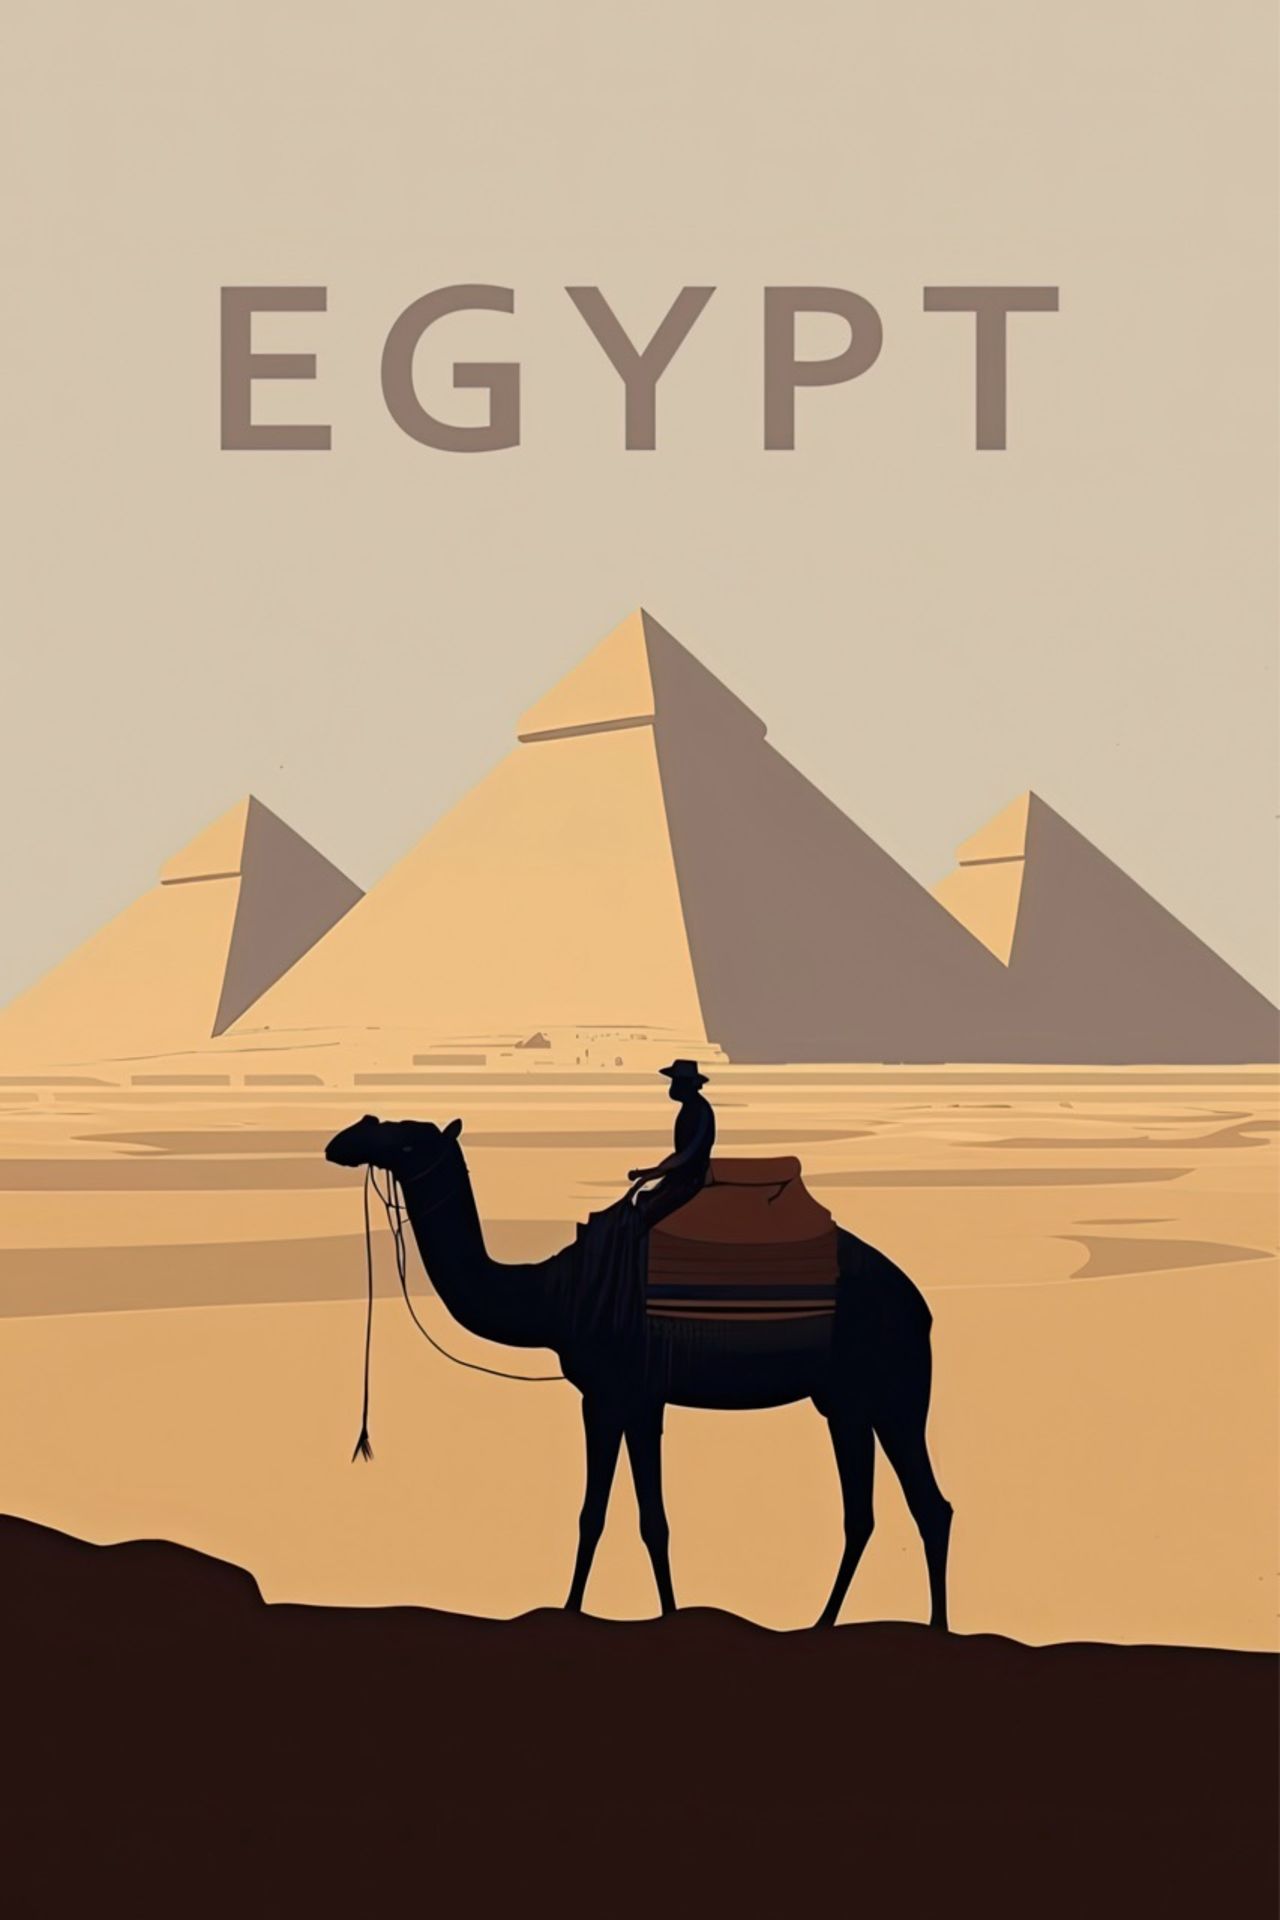 Egypt Travel Poster